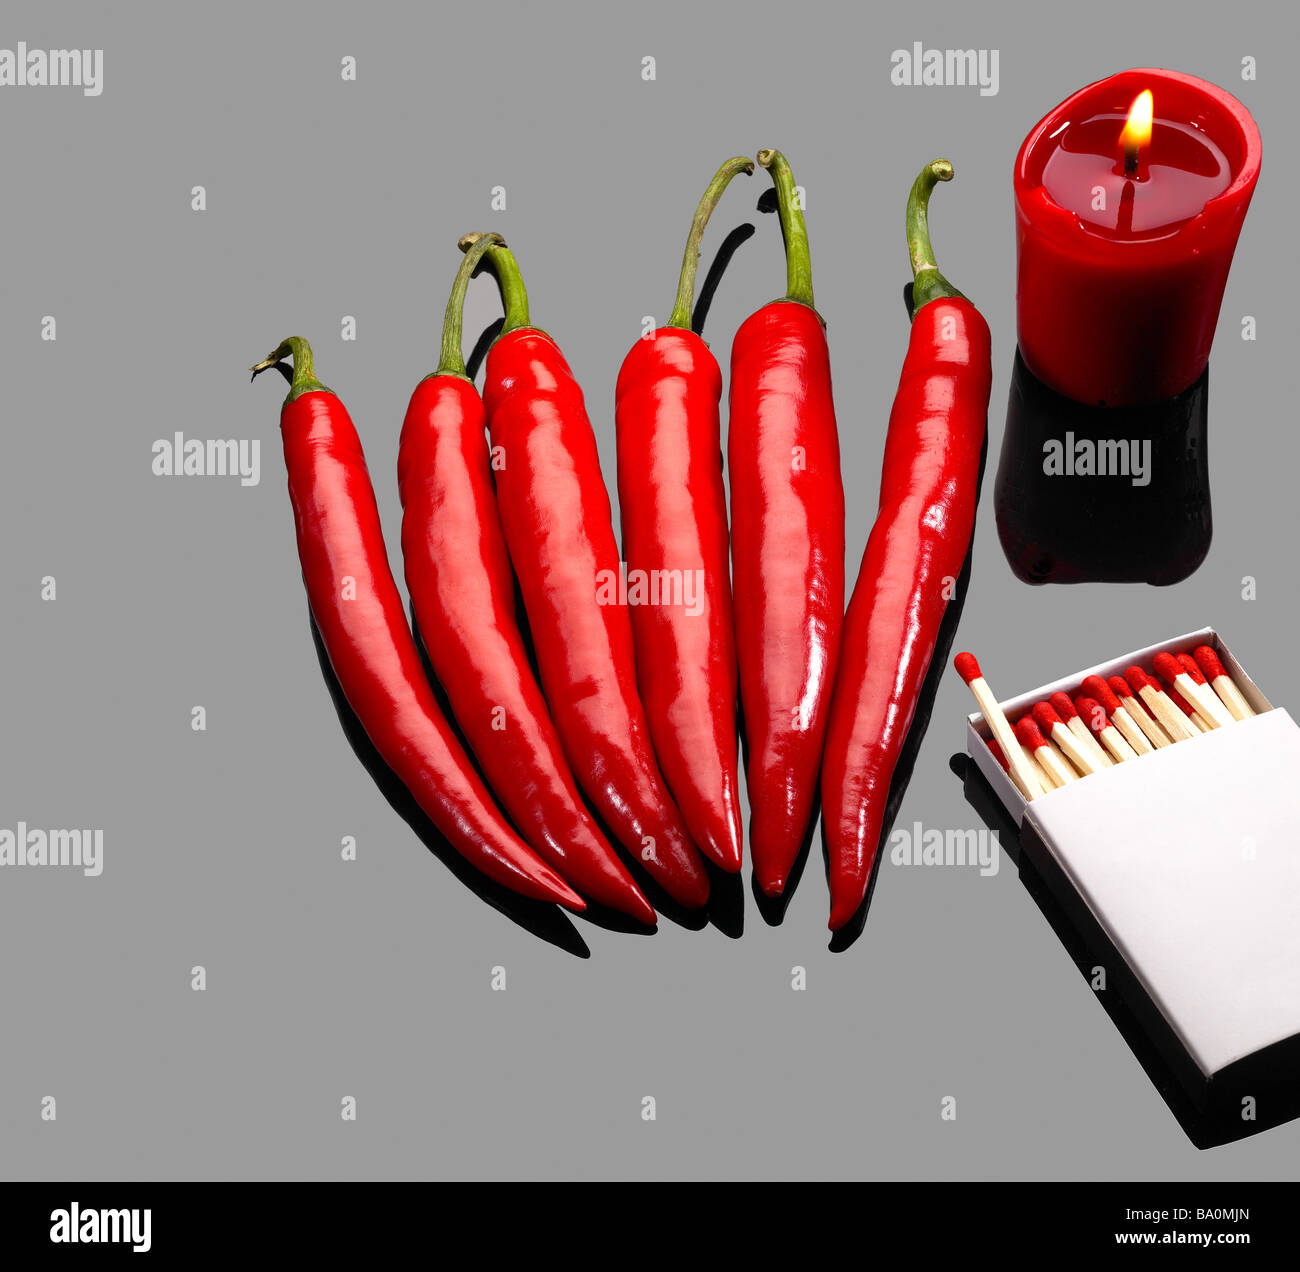 frische rote Chilischoten mit Streichhölzern und brennende rote Kerze über graue reflektierende Oberfläche Stockfoto